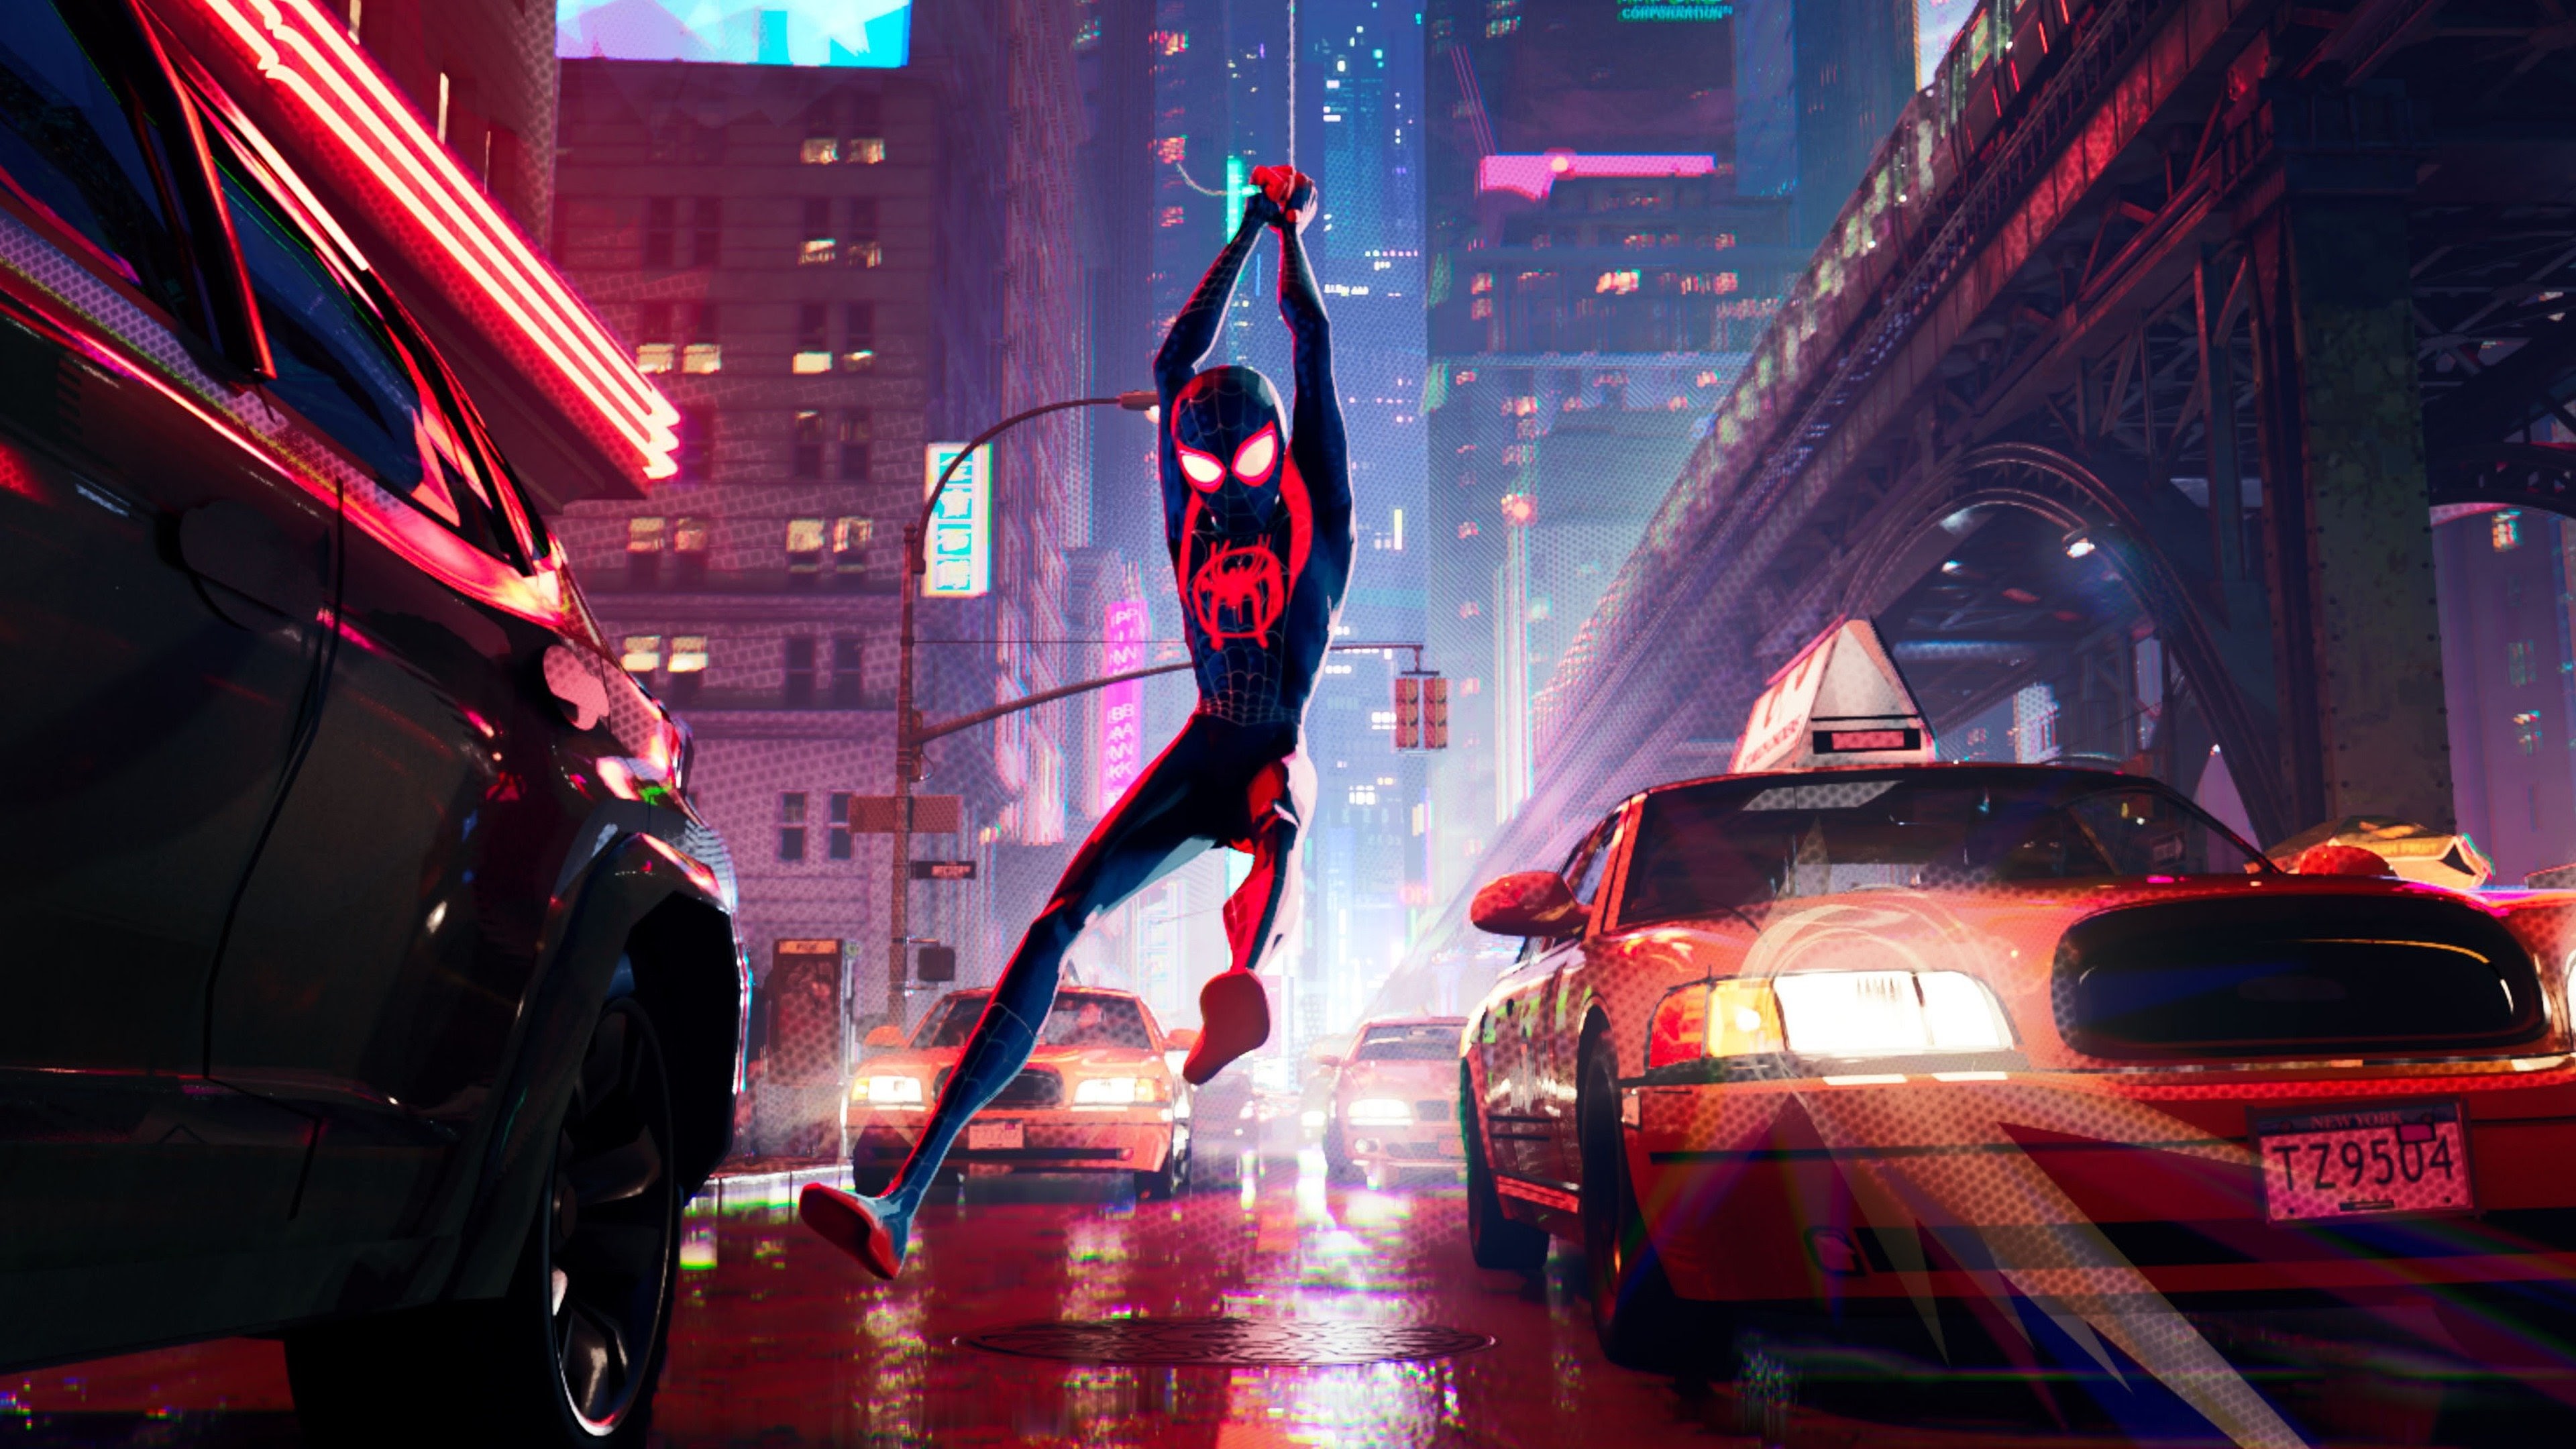 Spider-Man: Un Nuevo Universo - Movies on Google Play